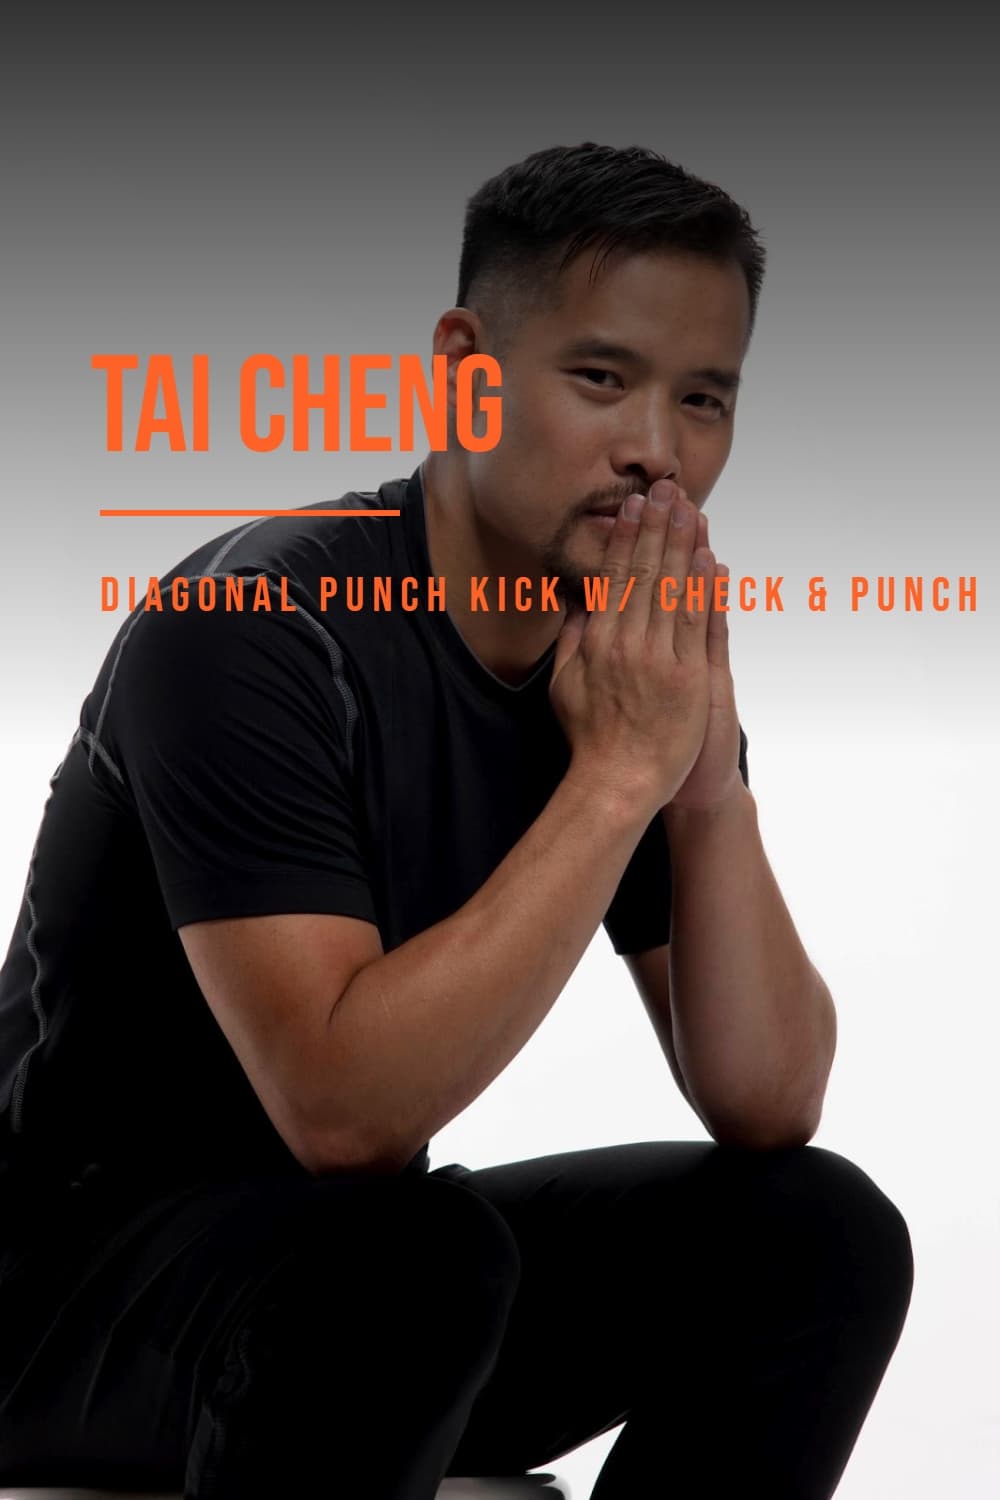 Tai Cheng - Diagonal Punch Kick With Check & Punch